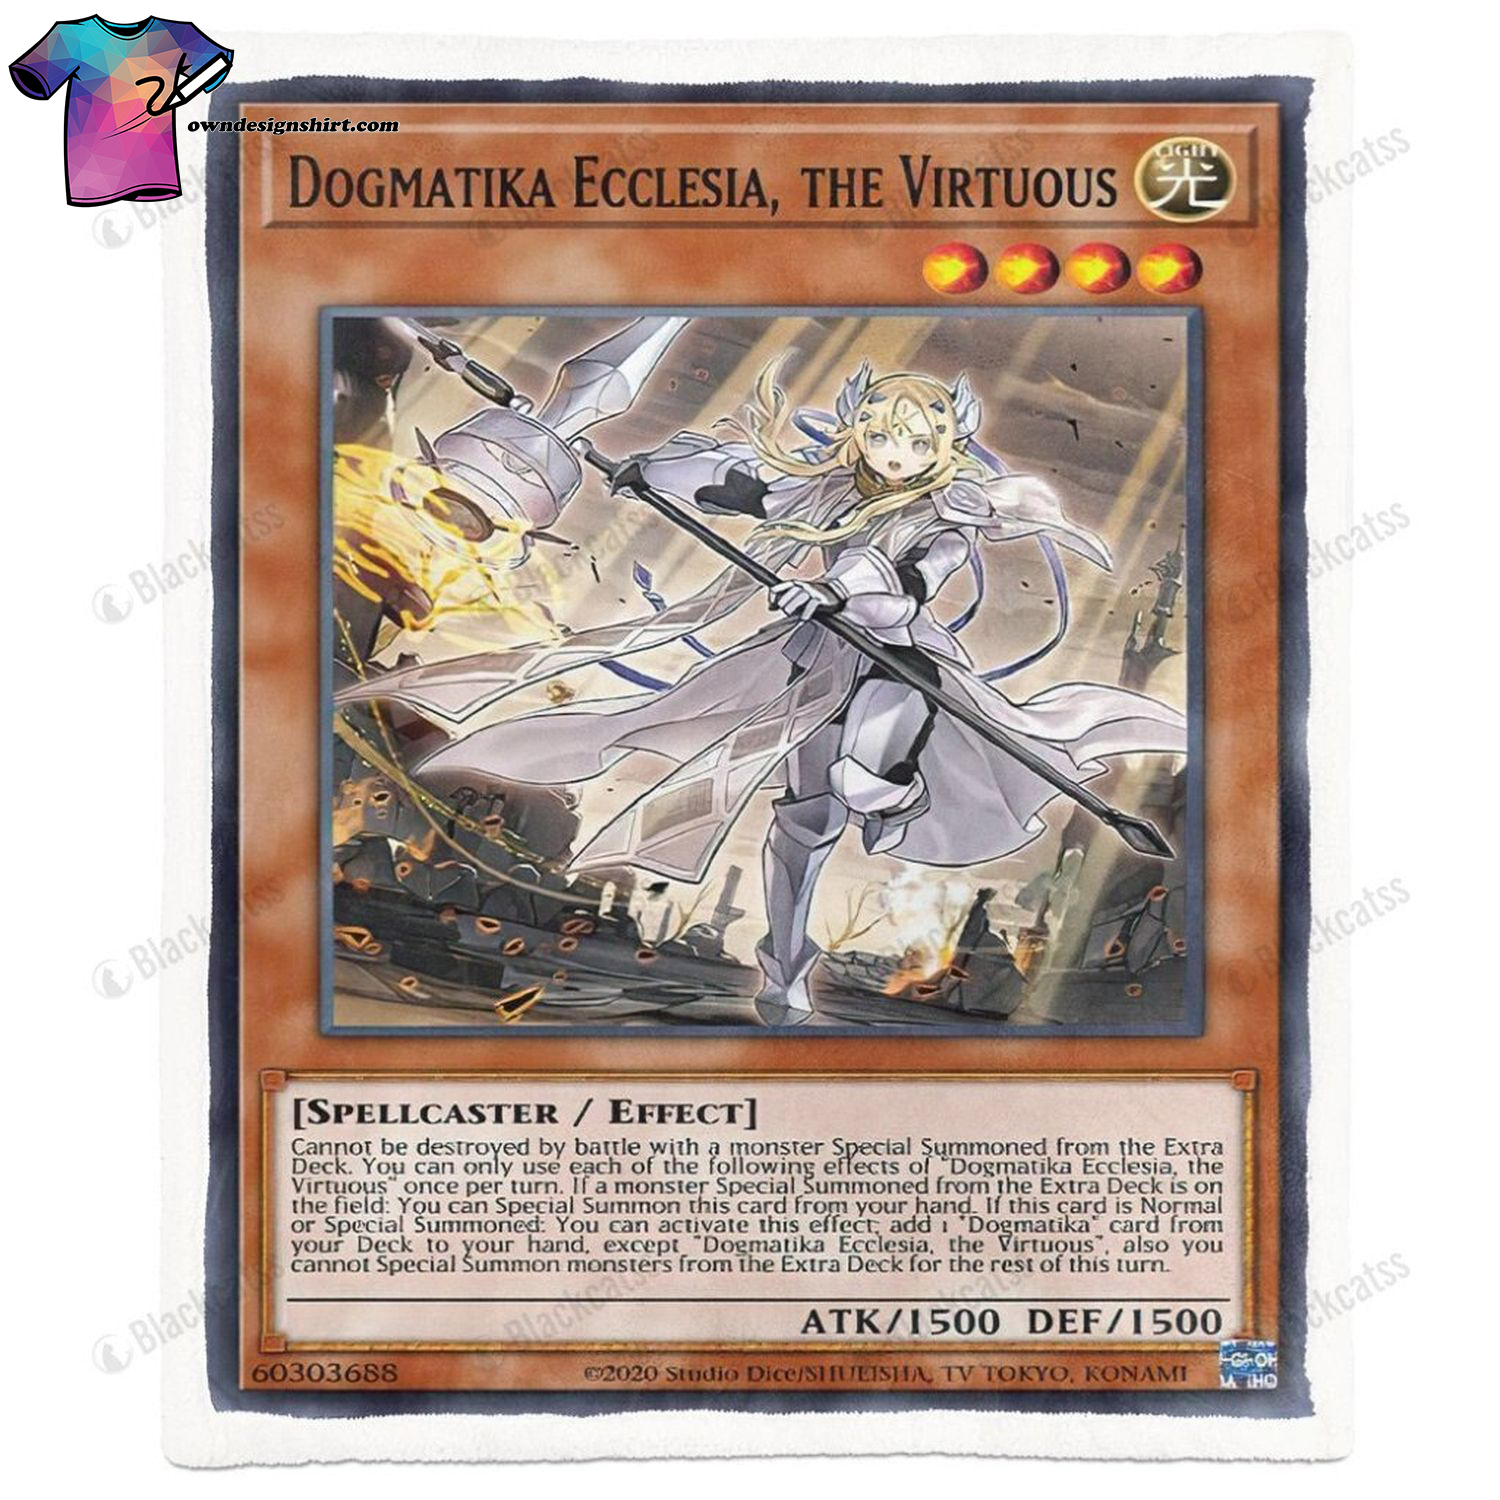 Game Yu-gi-oh Dogmatika Ecclesia The Virtuous Full Print Soft Blanket